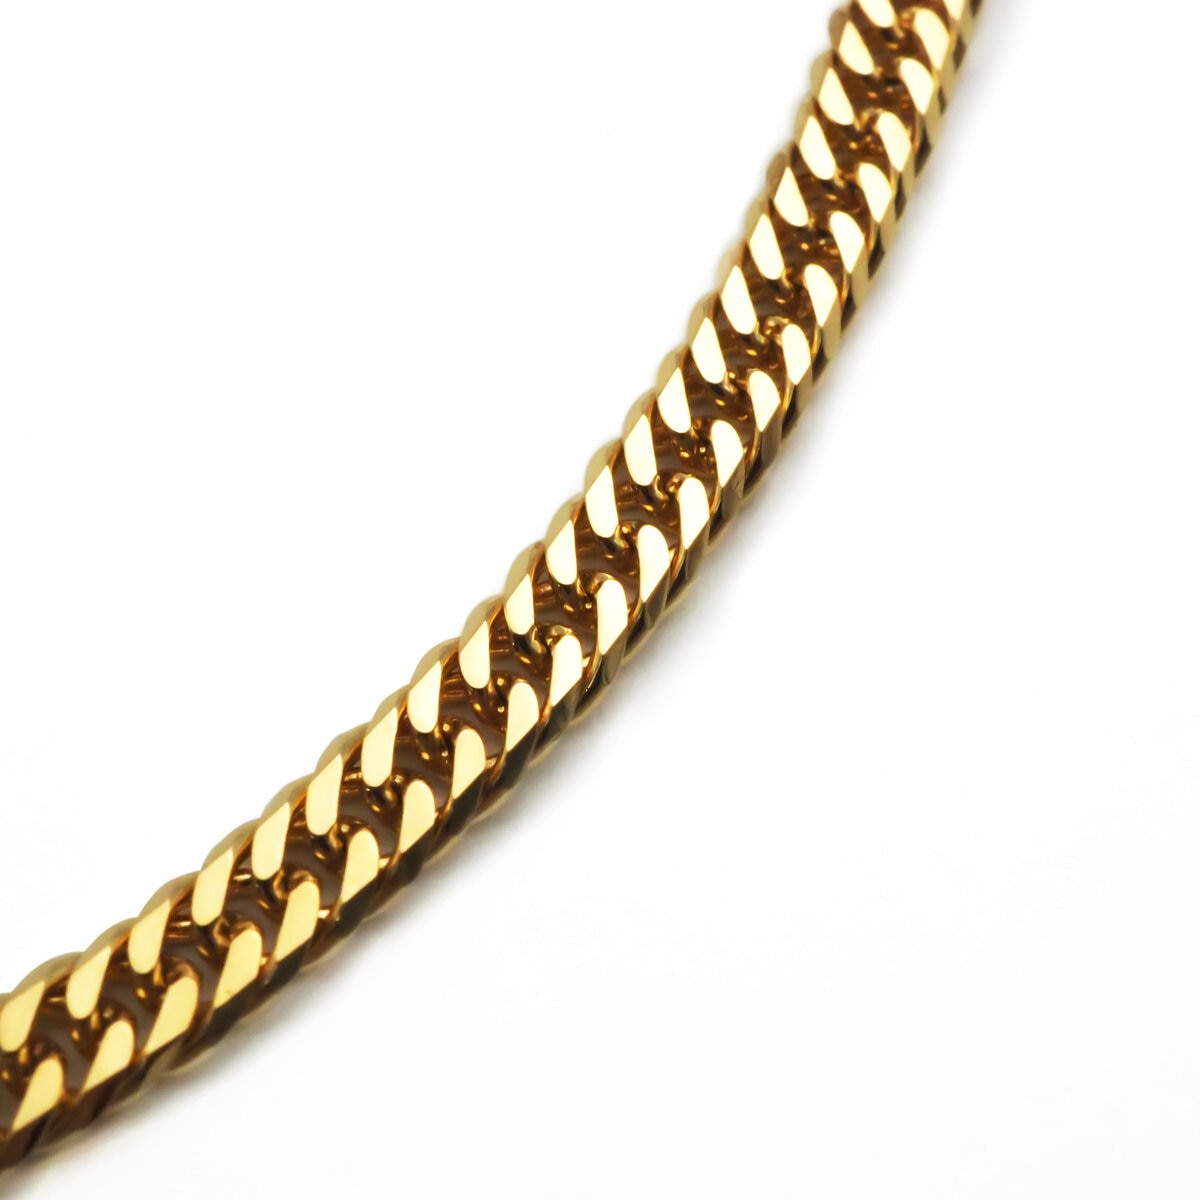 K18 Gold Curbed Chain (KIHEI) 10g 40cm